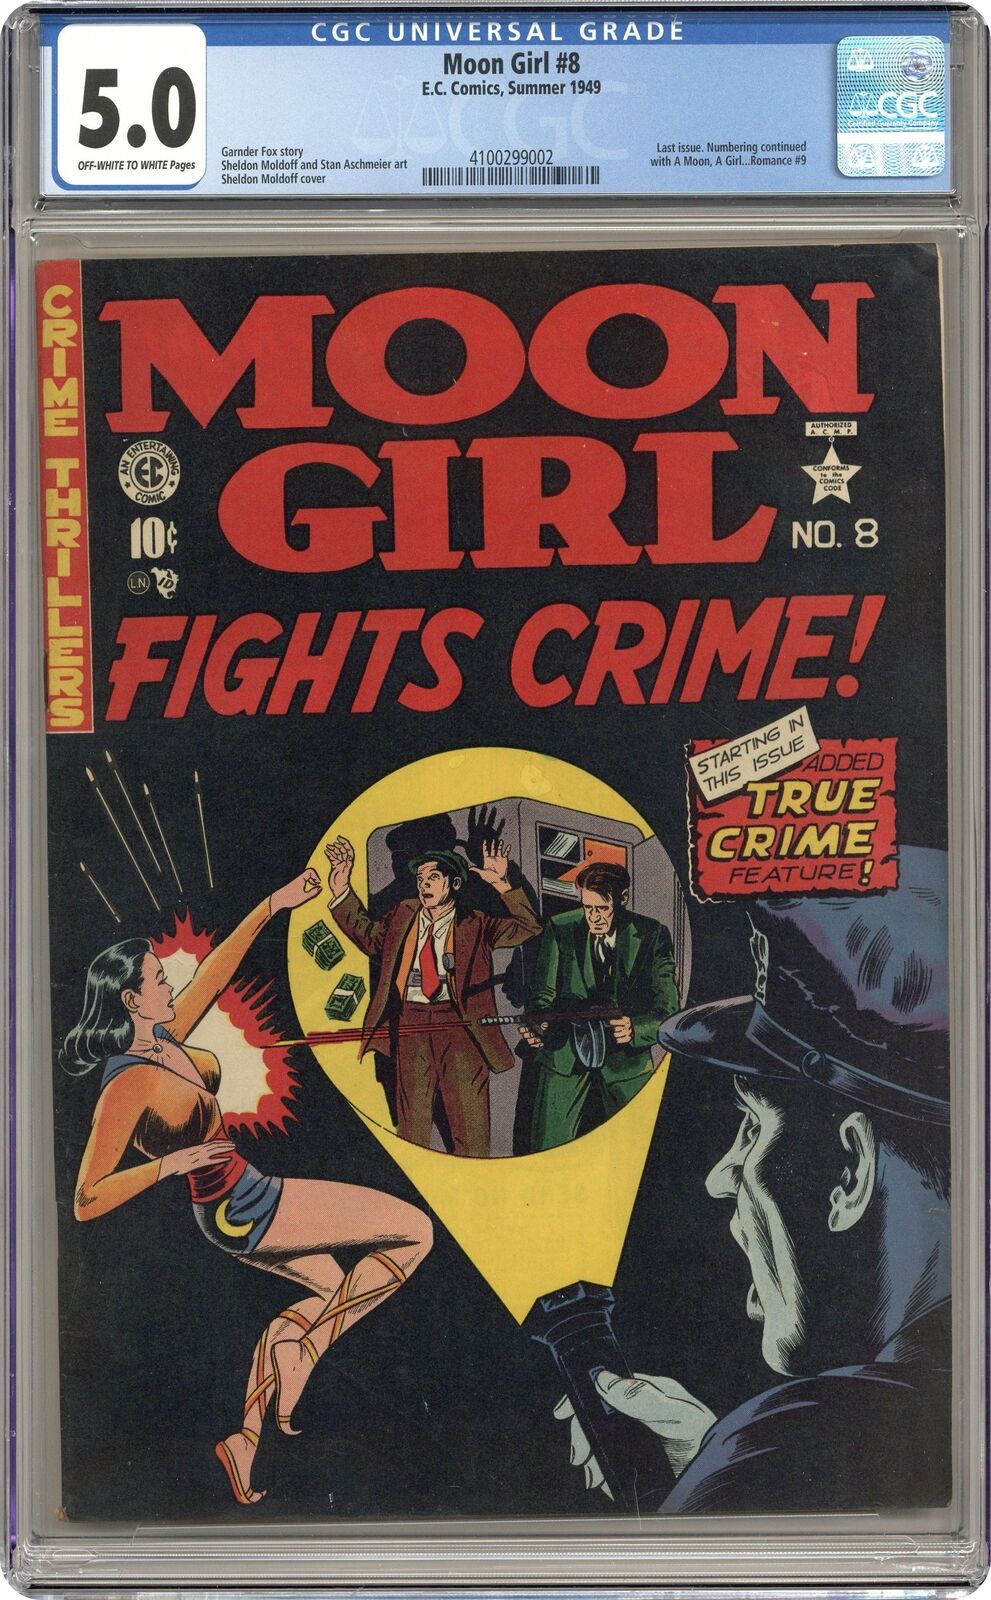 Moon Girl and the Prince #8 CGC 5.0 1949 4100299002